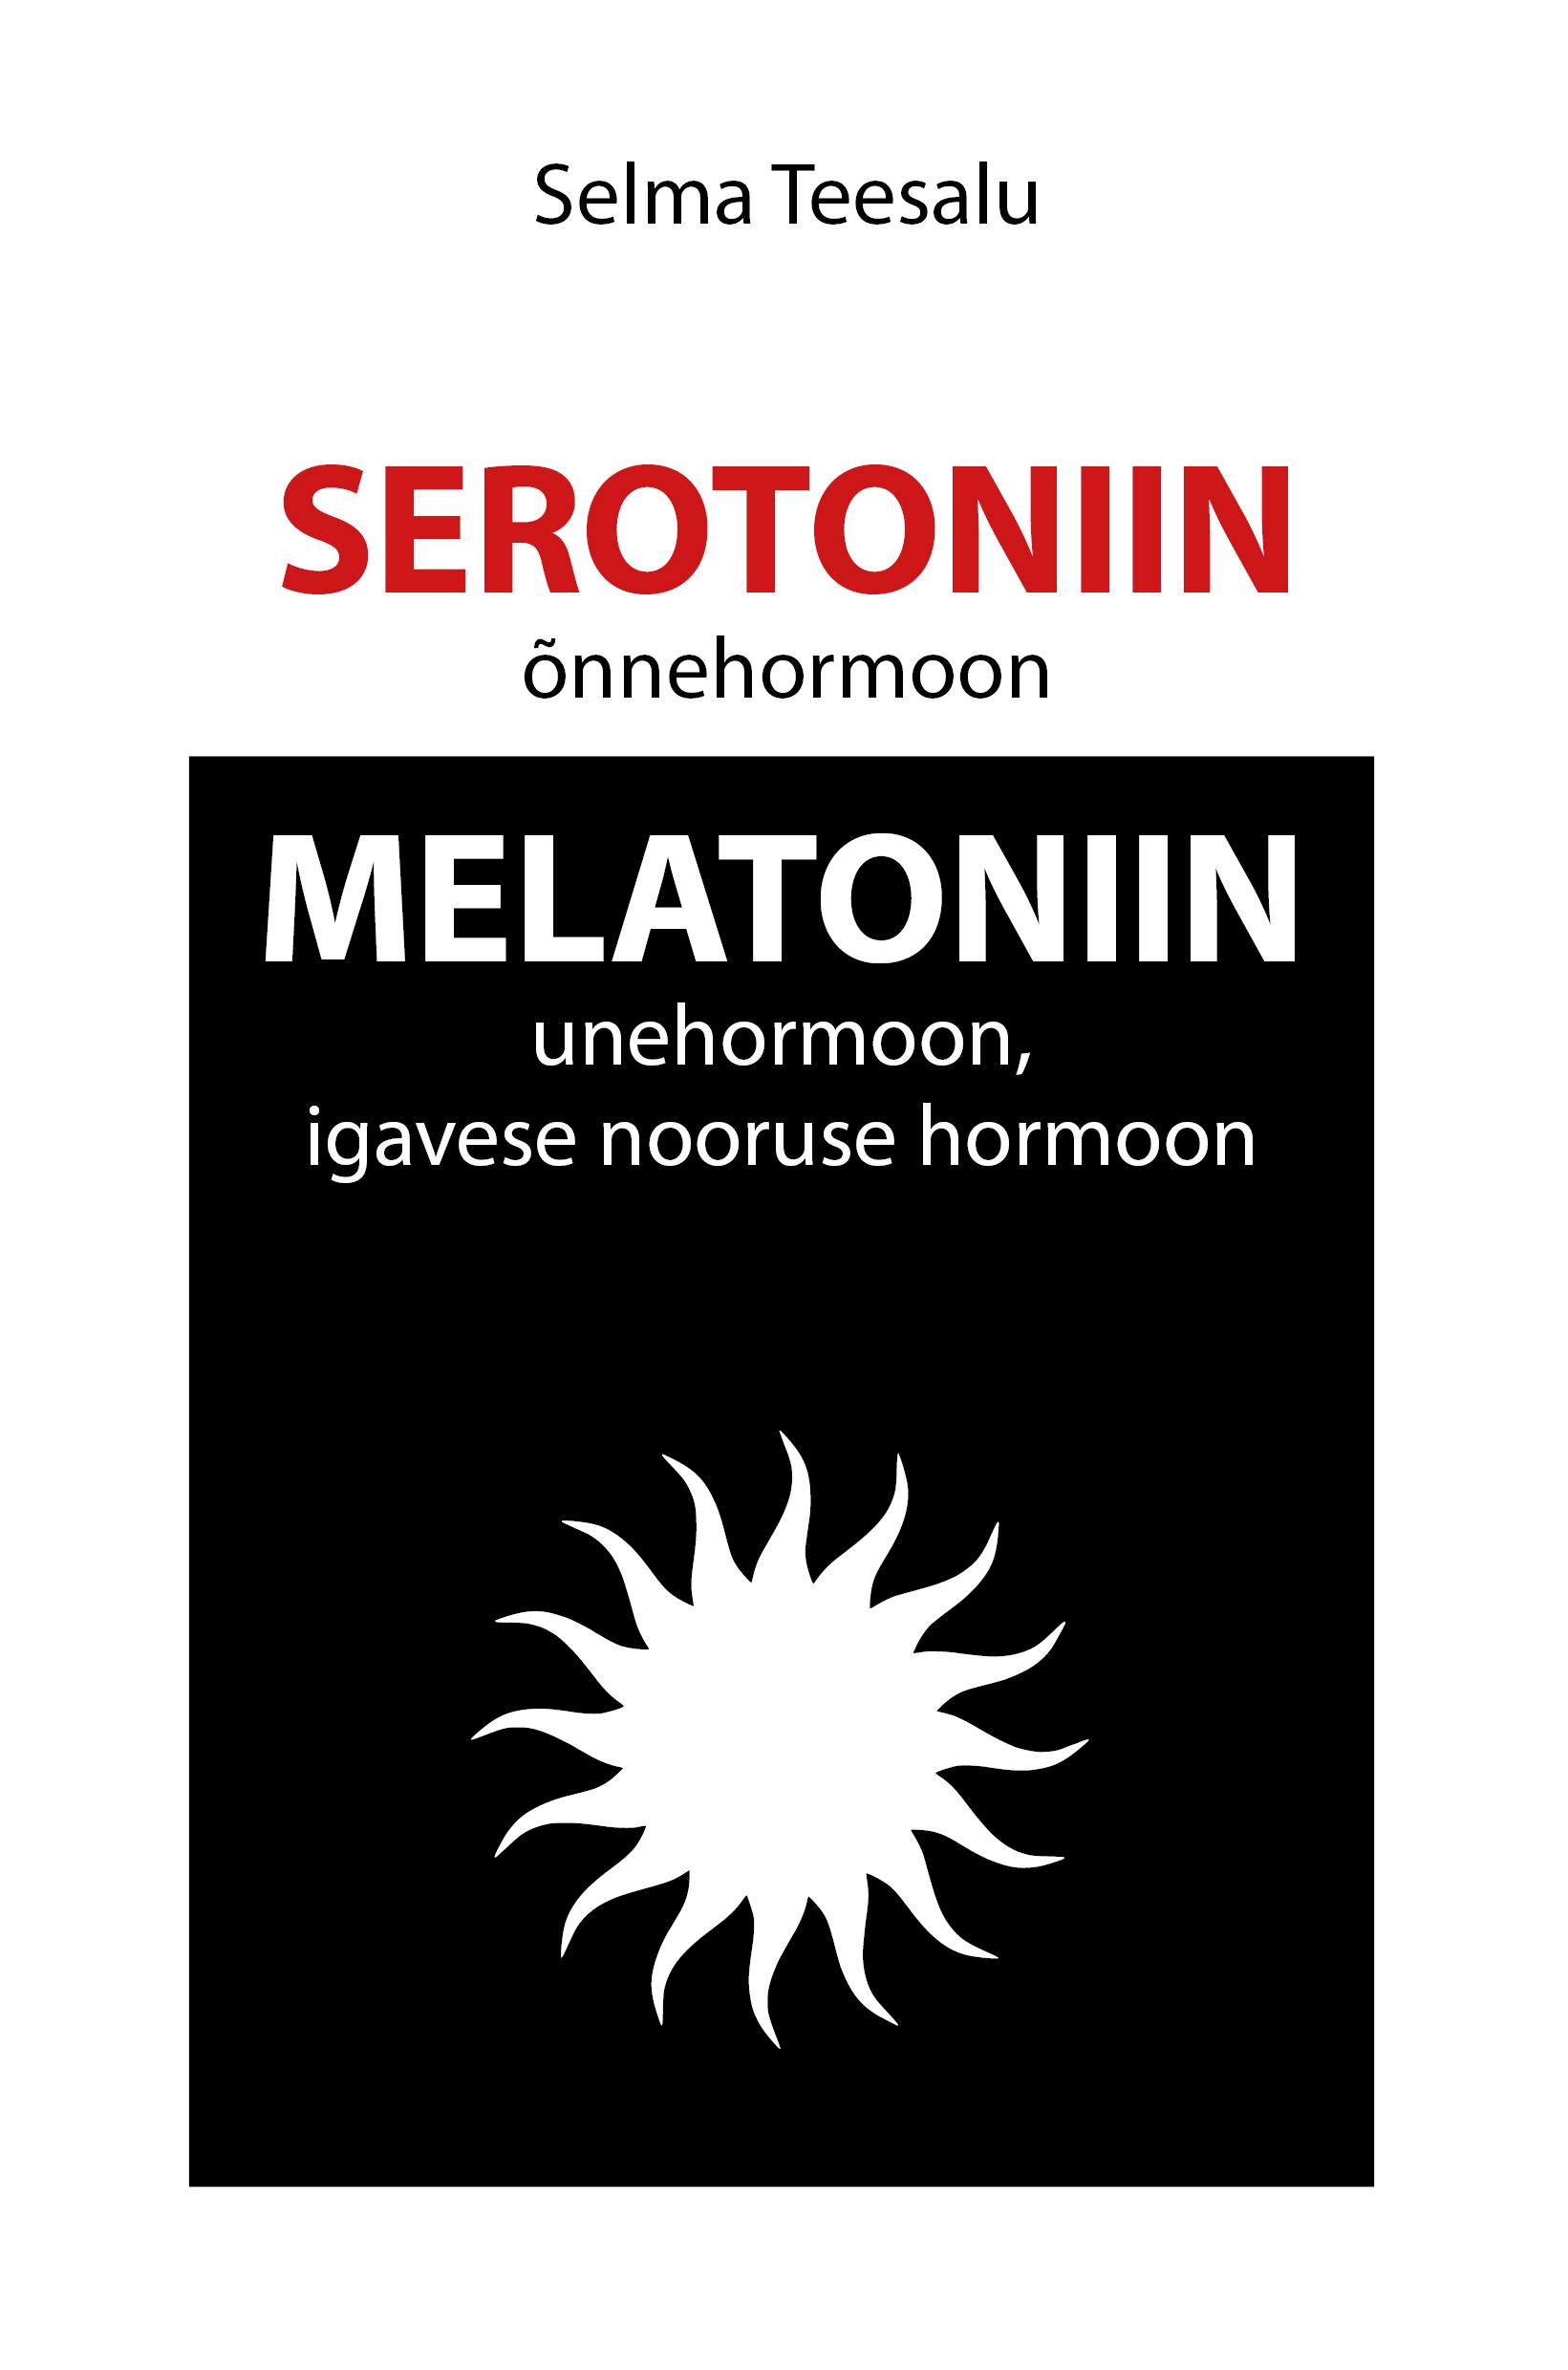 SEROTONIIN ("ÕNNEHORMOON") MELATONIIN (UNEHORMOON, IGAVESE NOORUSE HORMOON)